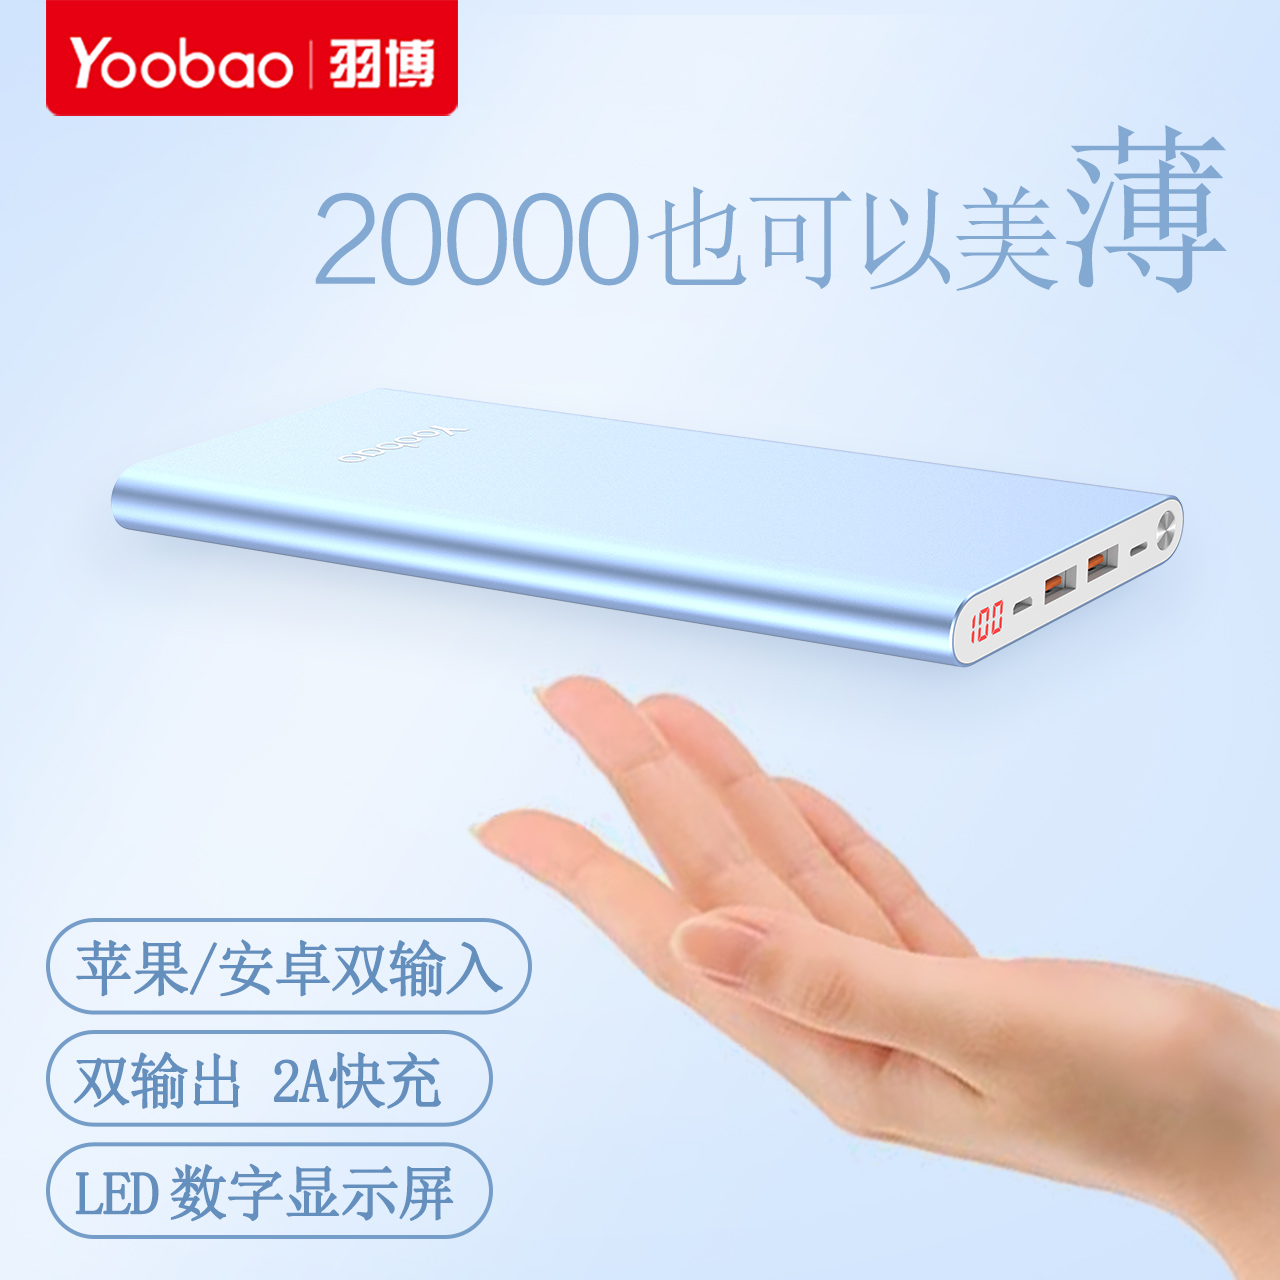 Yoobao羽博正品 超大容量超薄充电宝20000mAh两万毫安2W安卓苹果手机平板通用锂聚合物电池智能数显移动电源